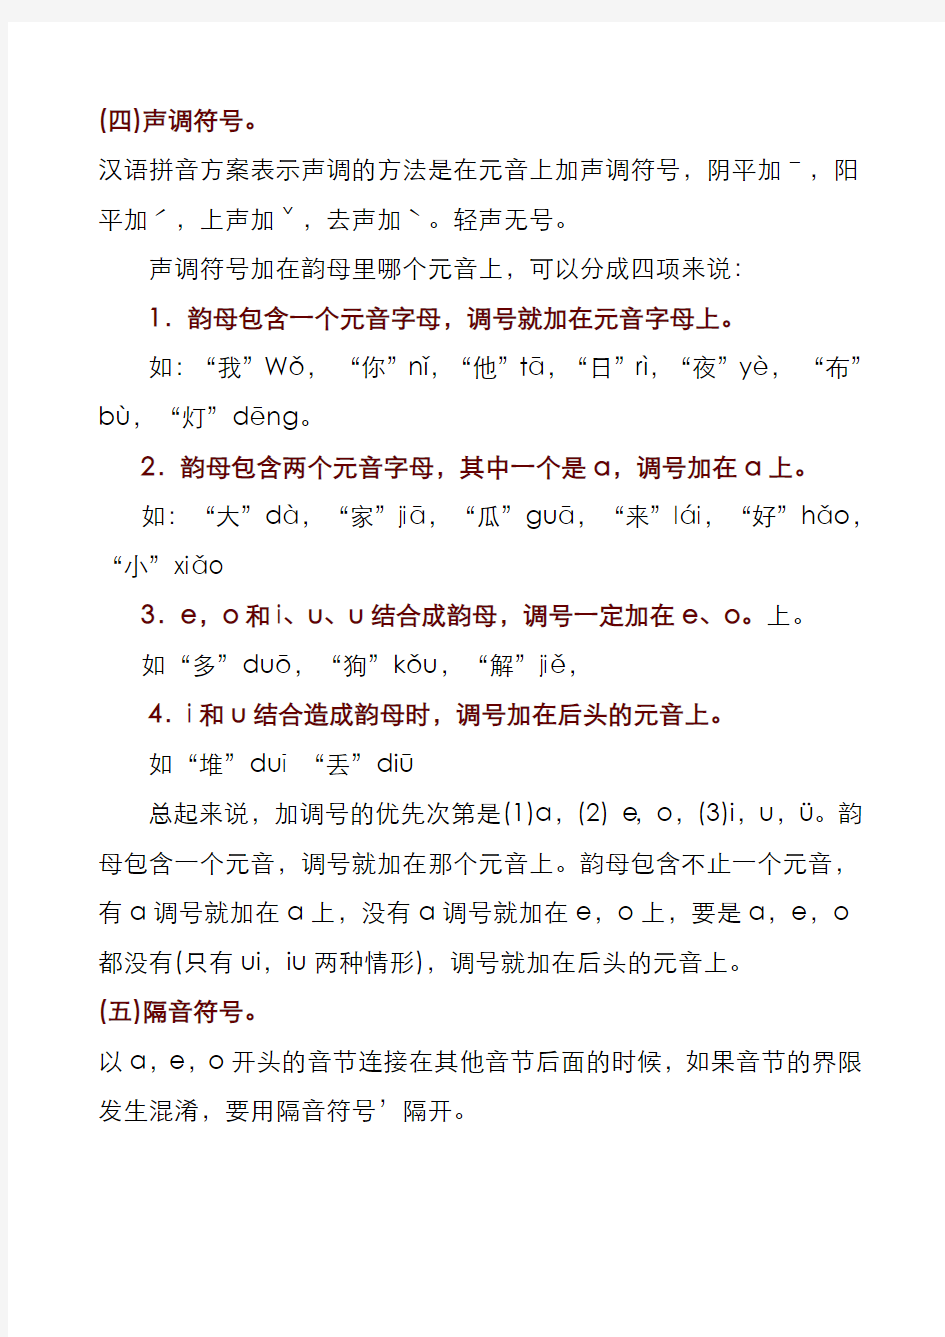 汉语拼音方案及正词法